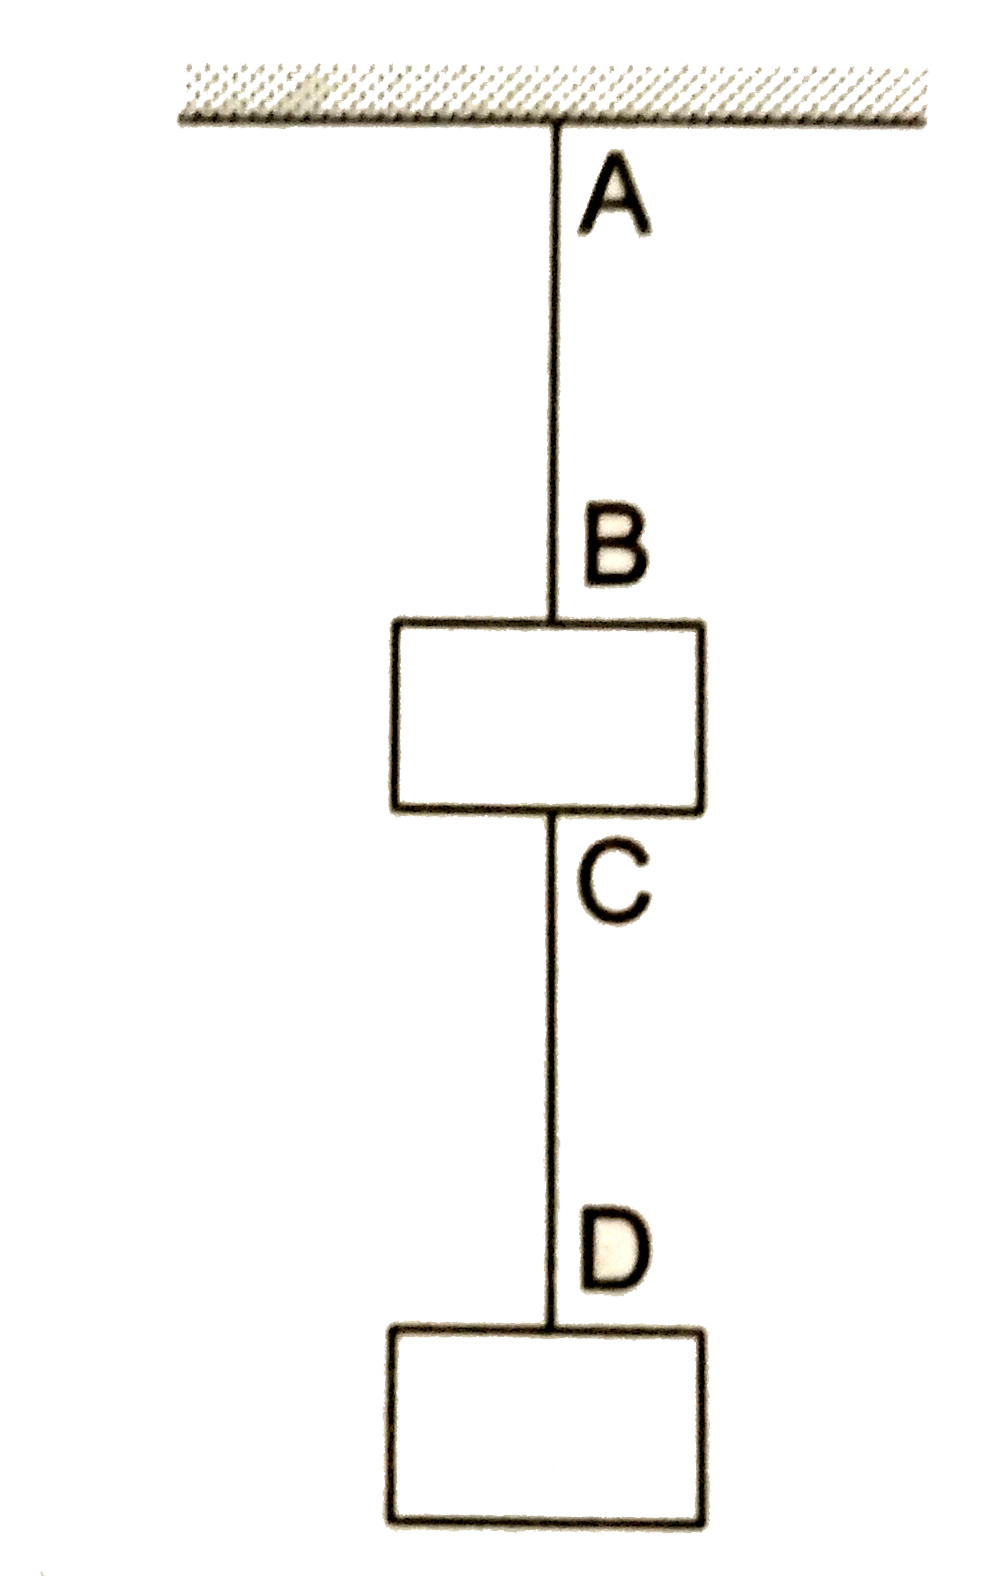 दो ब्लॉक जिनमें से प्रत्येक का द्रव्यमान 3.2  kg है, एक तार CD से जुड़े हैं और यह पूरी संहति एक तार द्वारा छत  से लटकाई हुई है । तार AB तथा CD के रेखीय द्रव्यमान घनत्व क्रमश : 10 g//m तथा 8 g//m है । AB तथा CD तारों में संभावित अनुप्रस्थ तरंगों कि चालें बताएँ ।